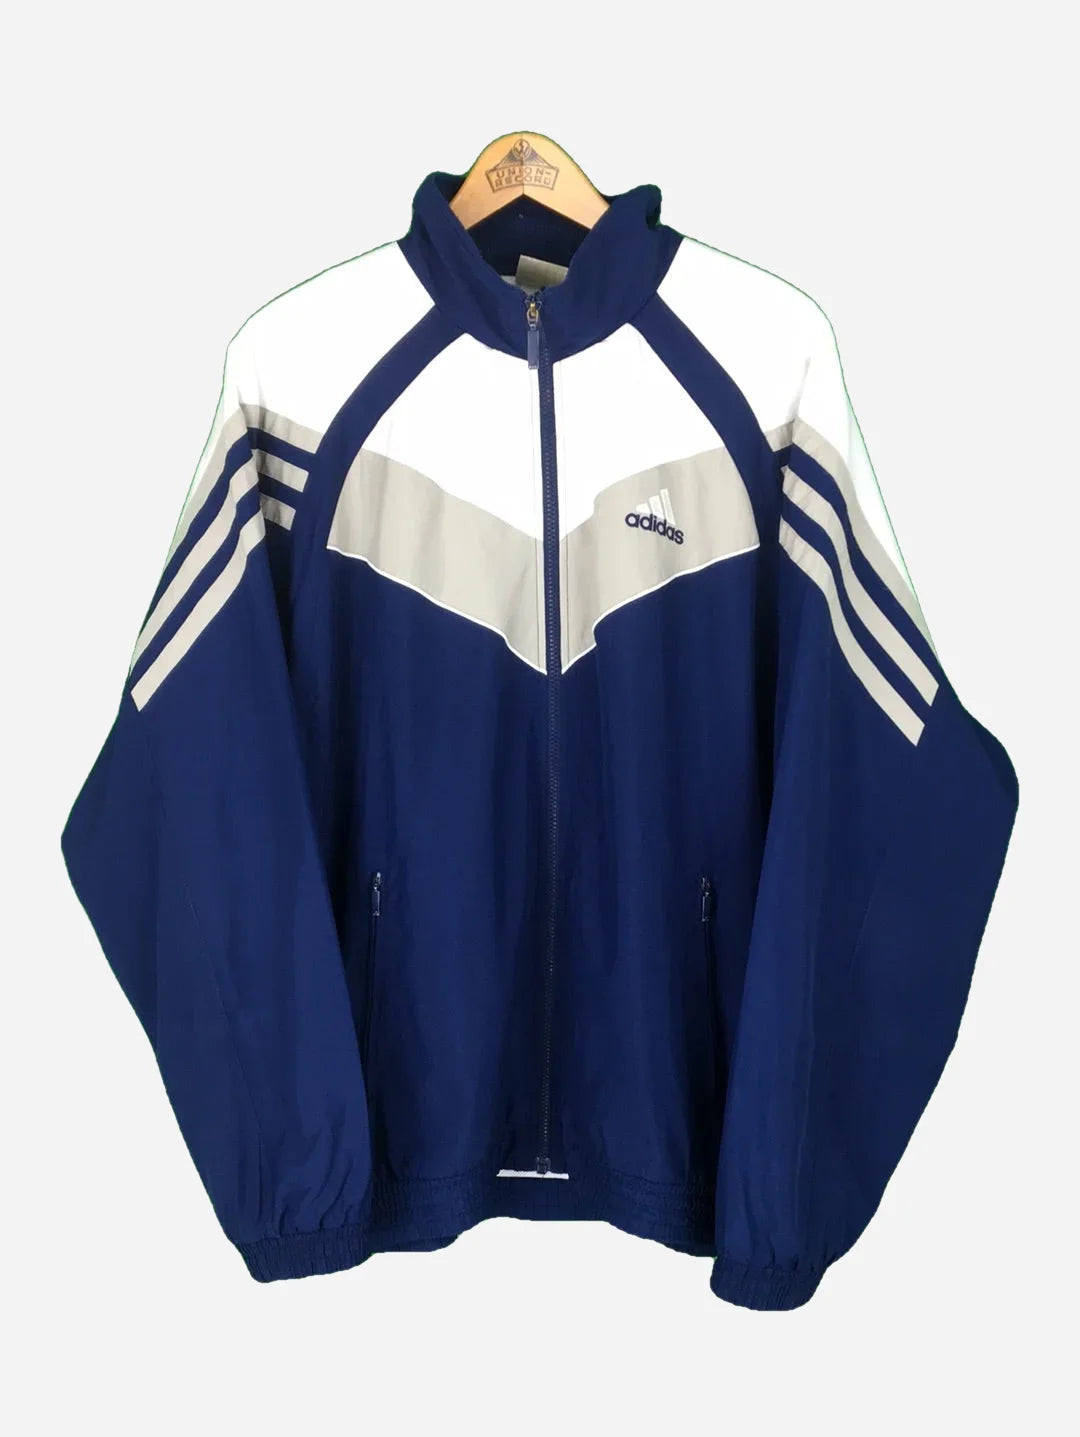 Adidas training jacket (XXL)